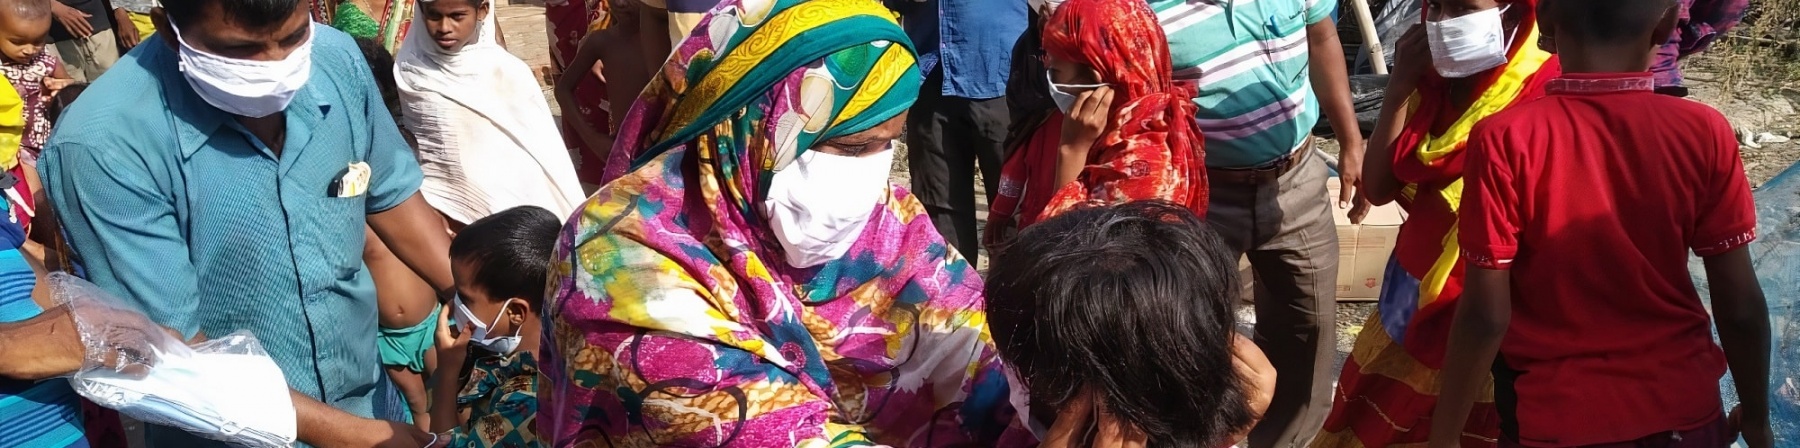 gruppo di persone di origine indiana durante una consegna di mascherine per proteggersi dal covid-19